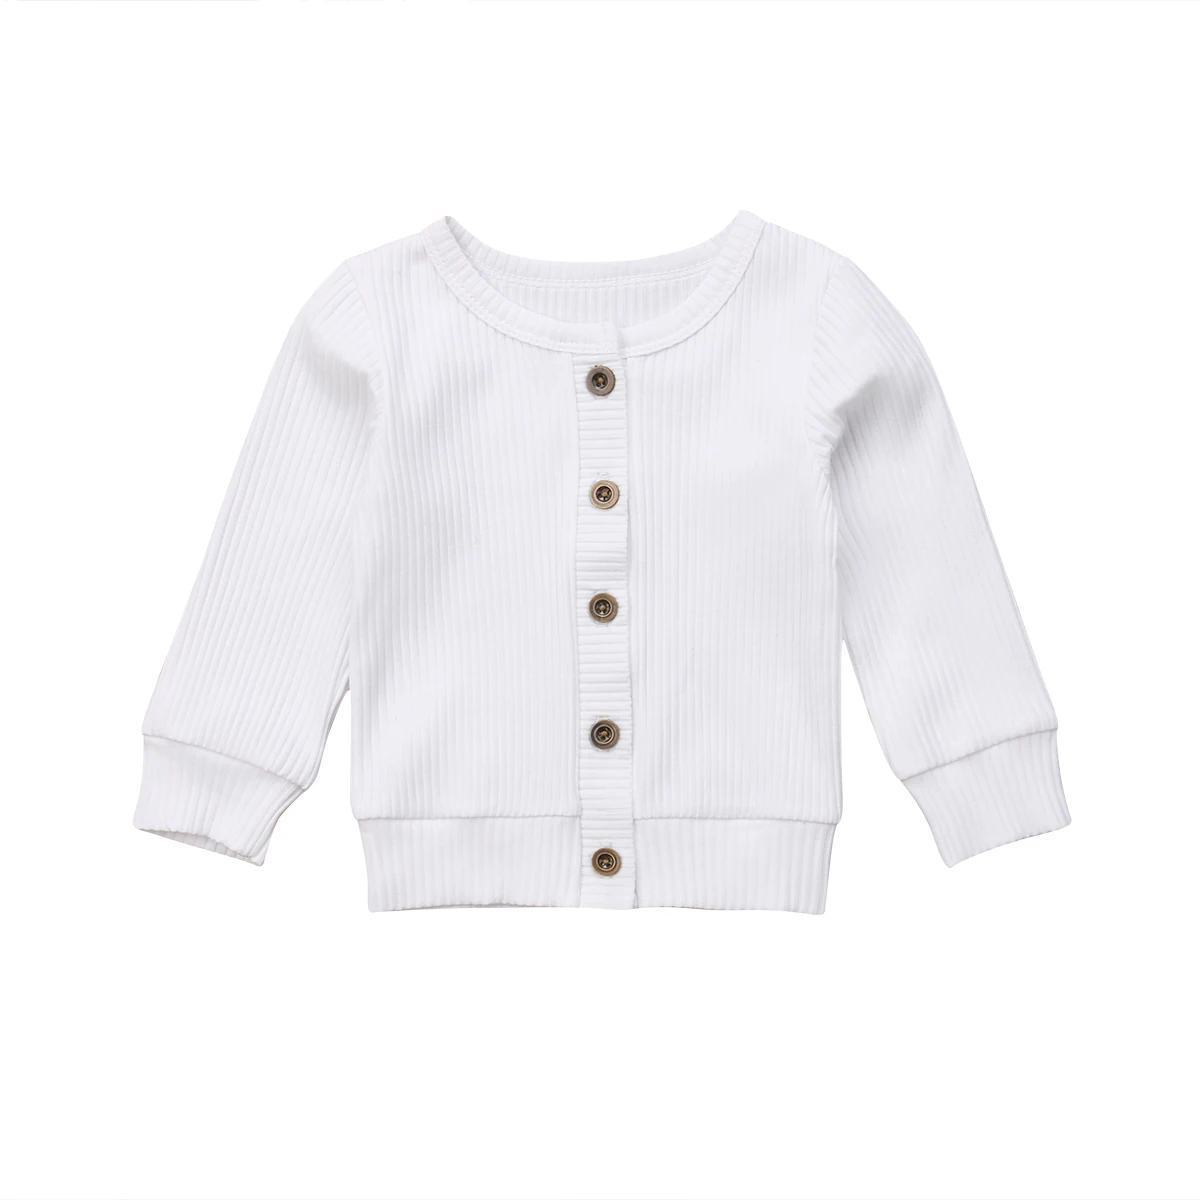 Новорожденных Одежда для маленьких девочек кнопка вязаный свитер кардиган пальто Топы - Цвет: Белый